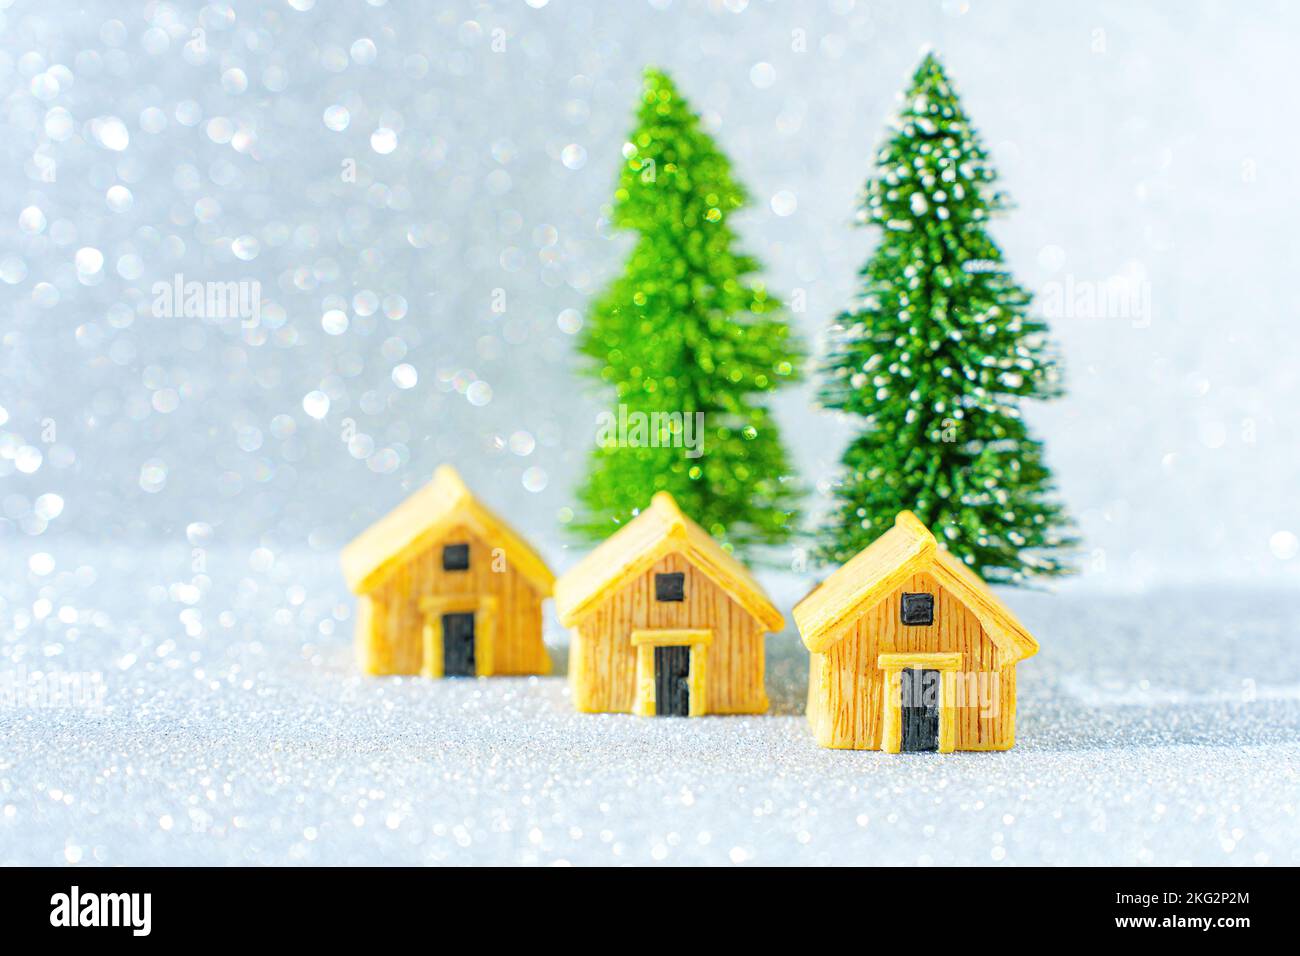 Trois cottages miniatures et deux arbres de Noël sur fond étincelant. Banque D'Images